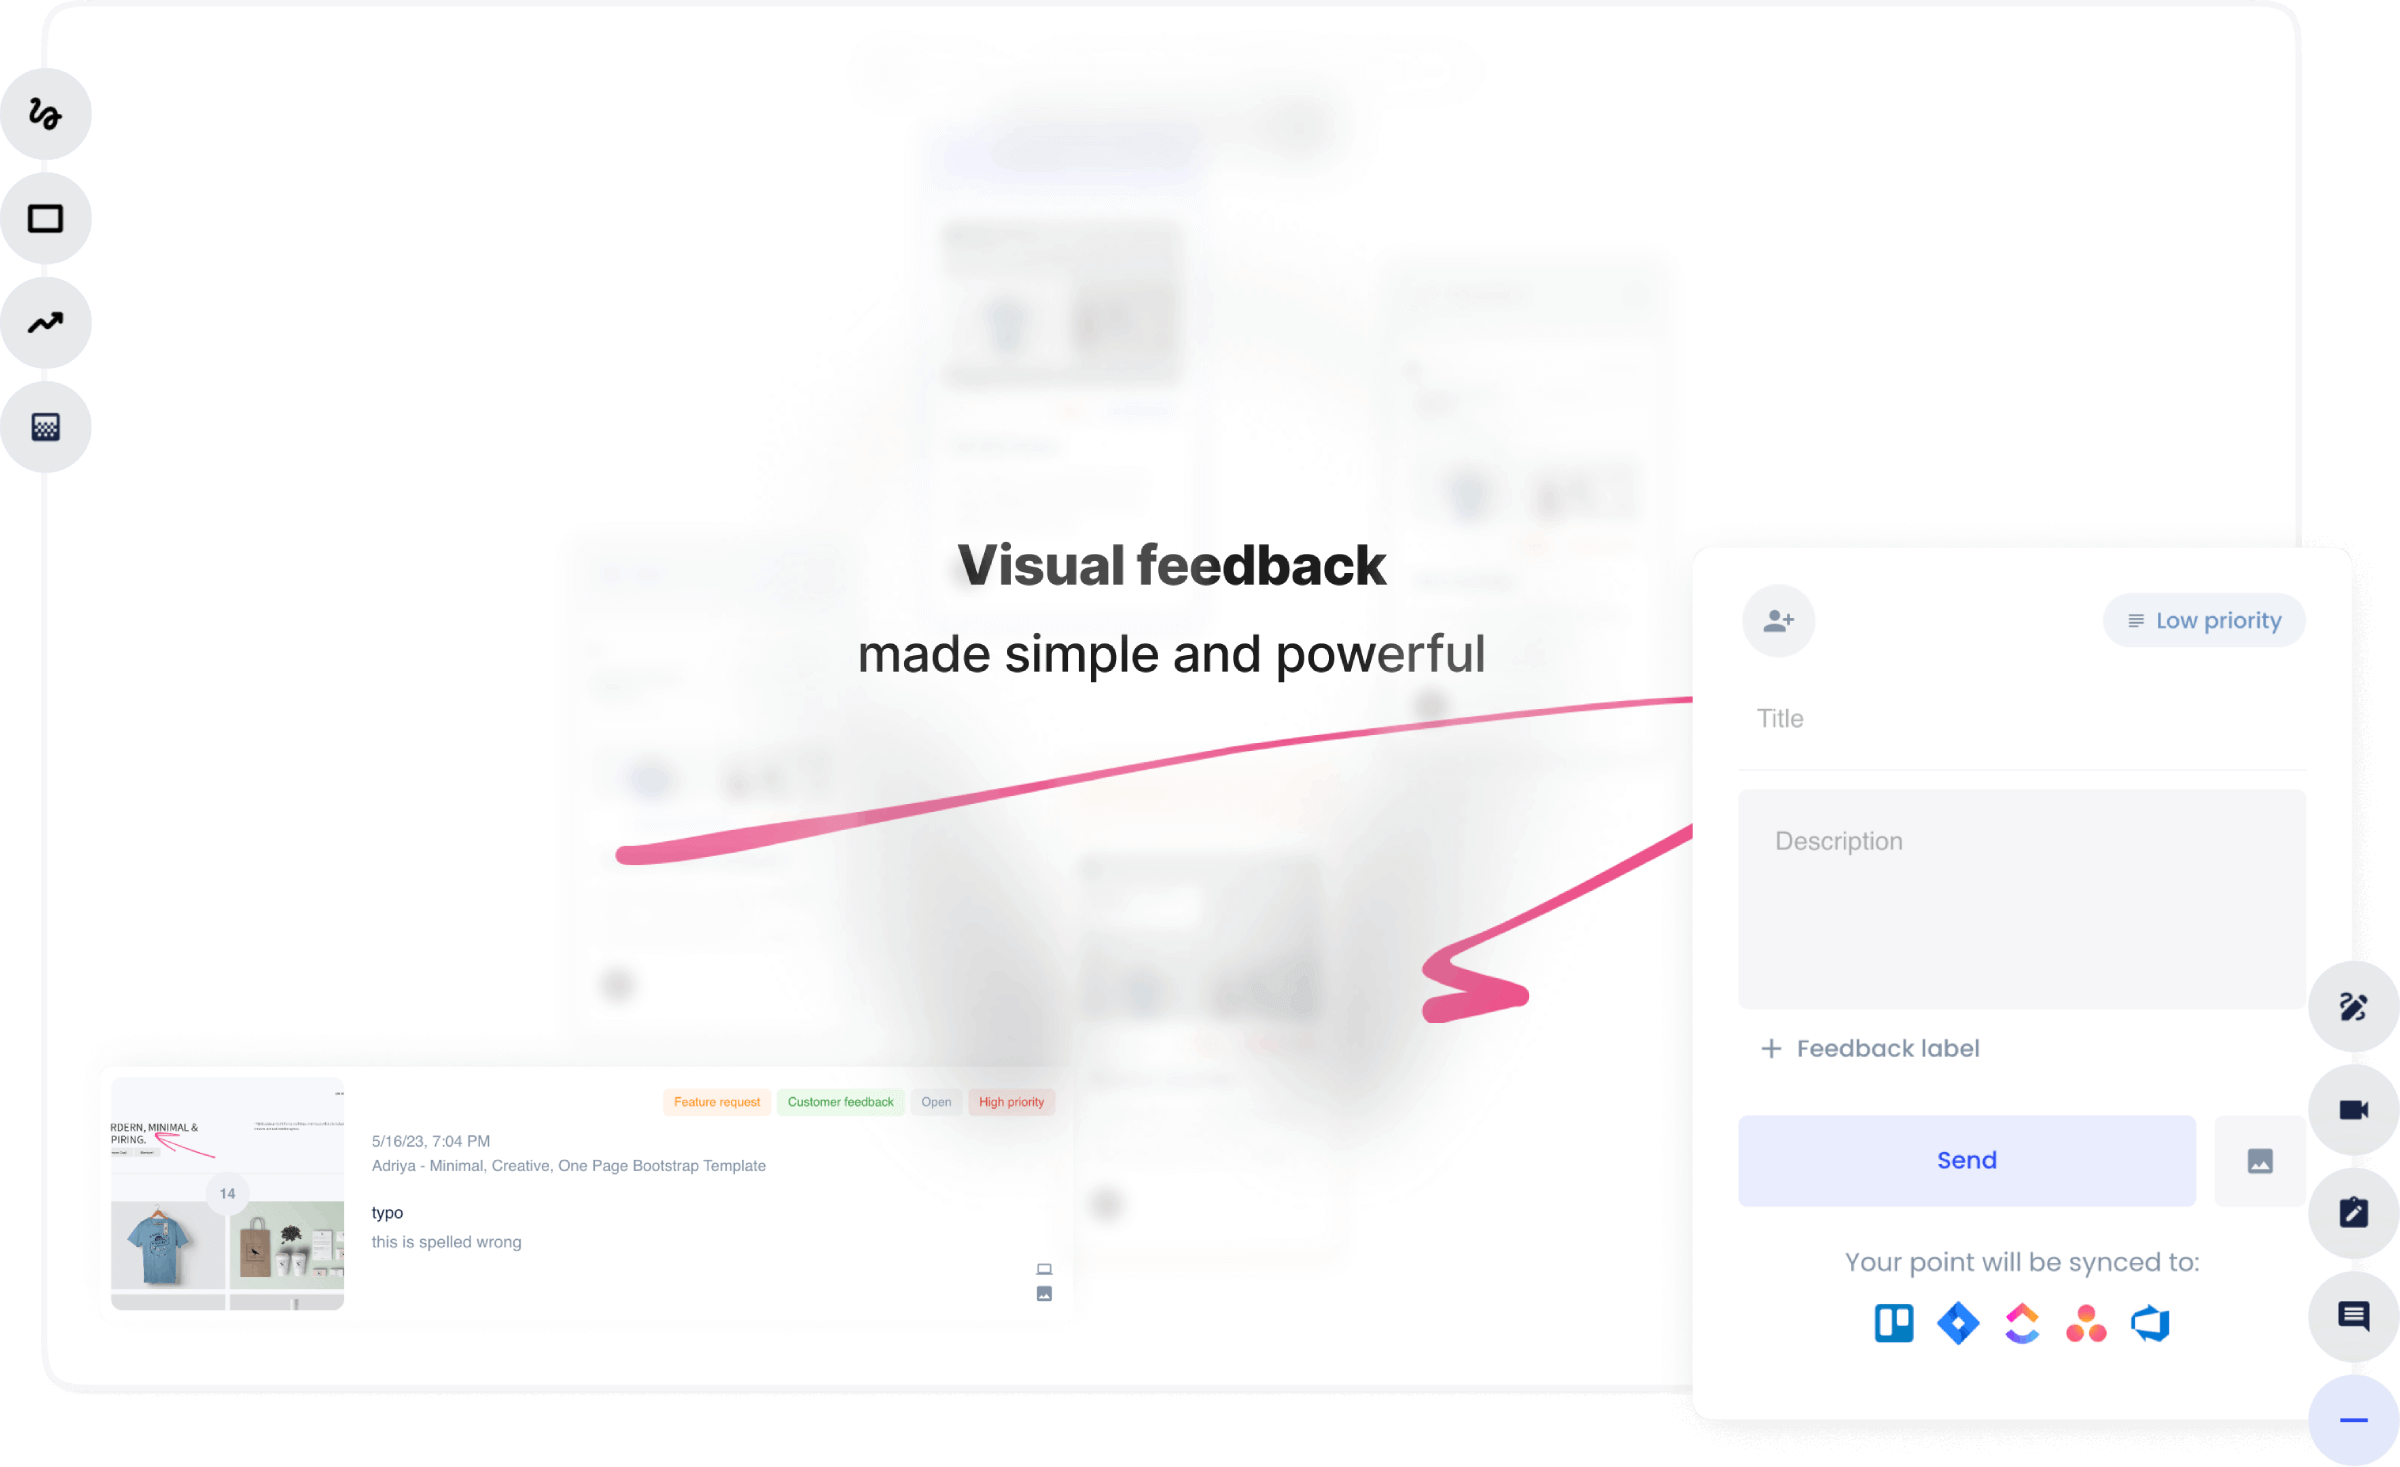 klynd - Interactive feedback widget